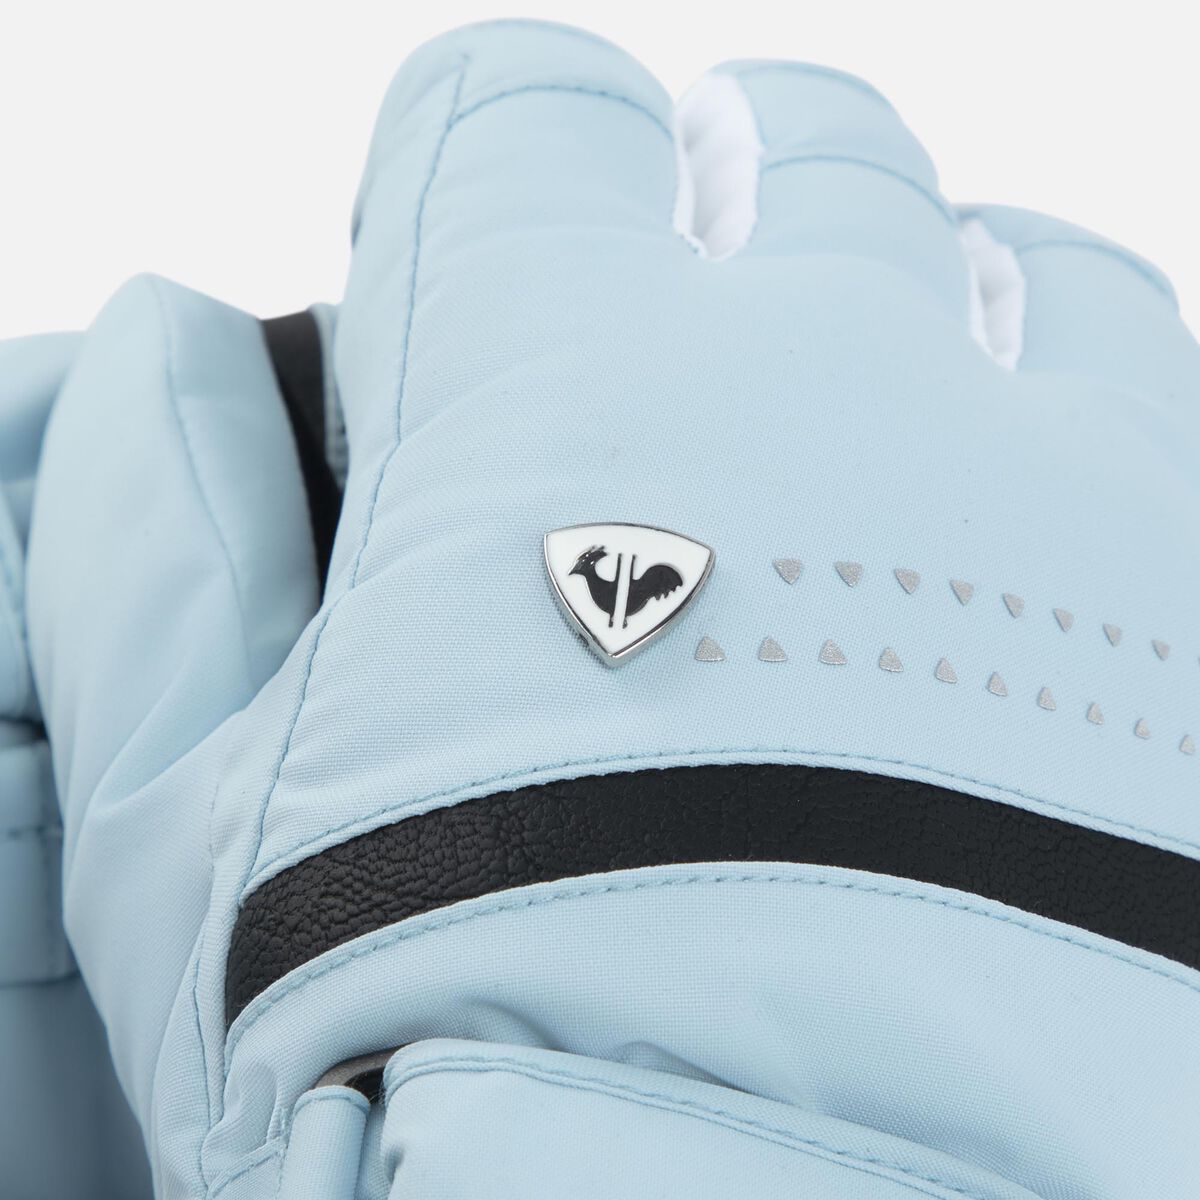 Rossignol Women's Nova waterproof ski gloves Blue